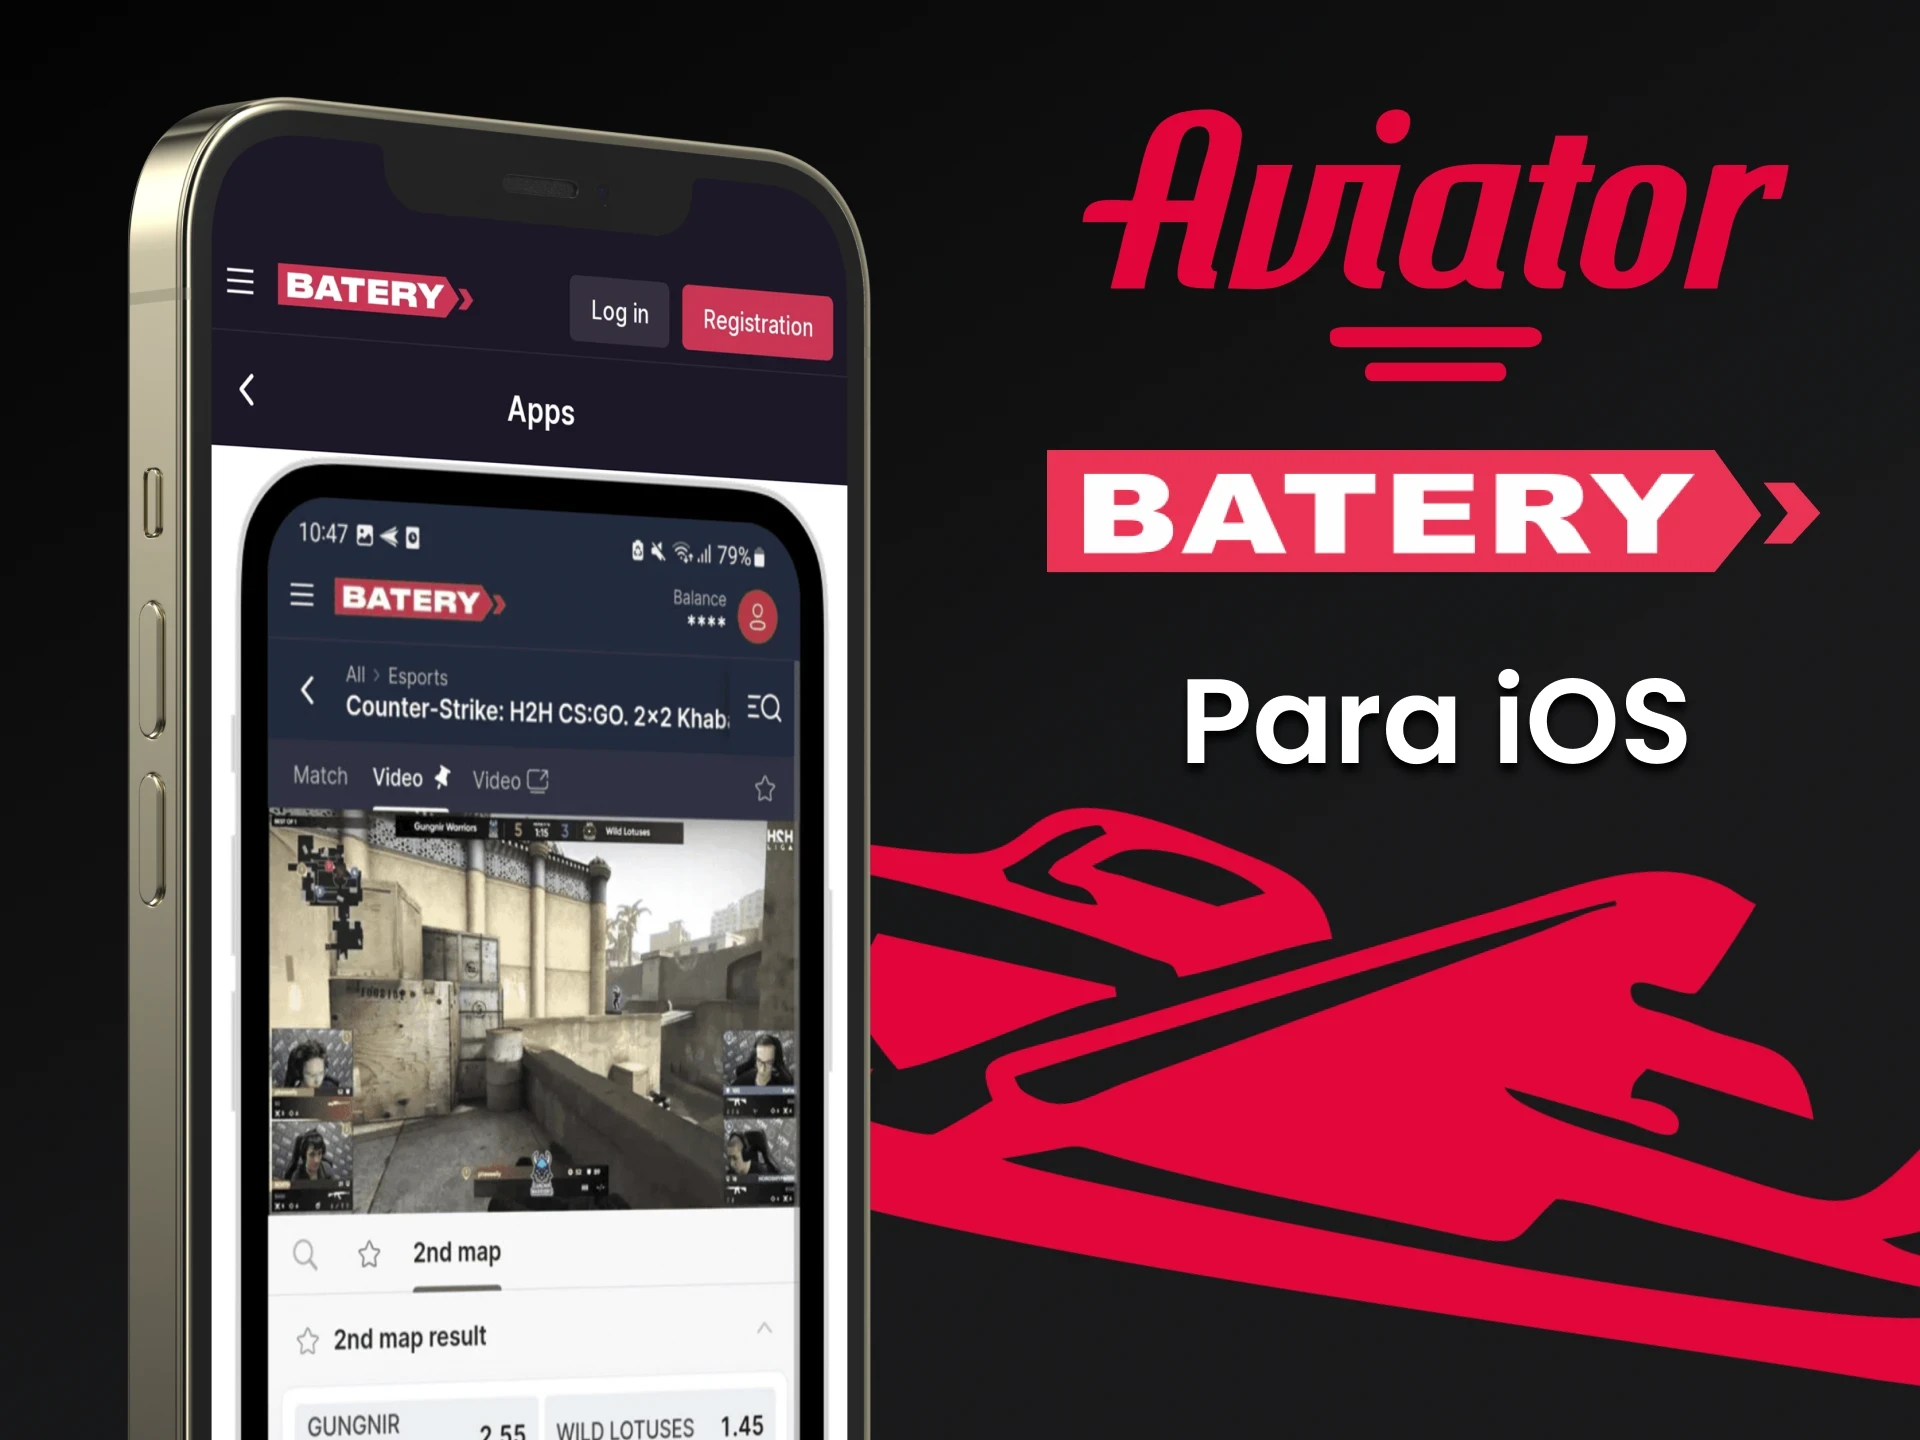 Baixe o aplicativo Batery no iOS para jogar Aviator no Batery.